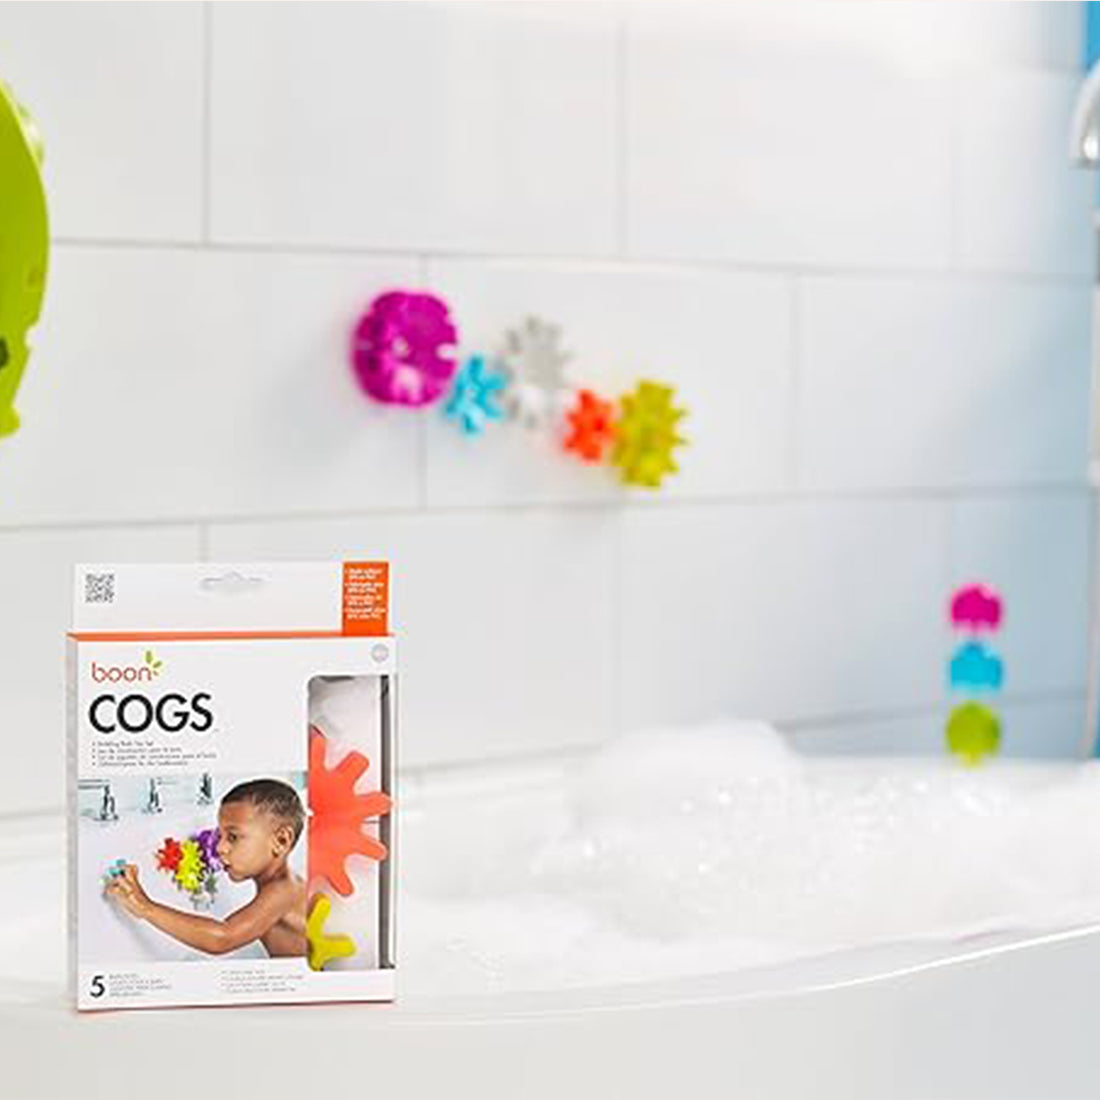 Cogs Building Bath Toy